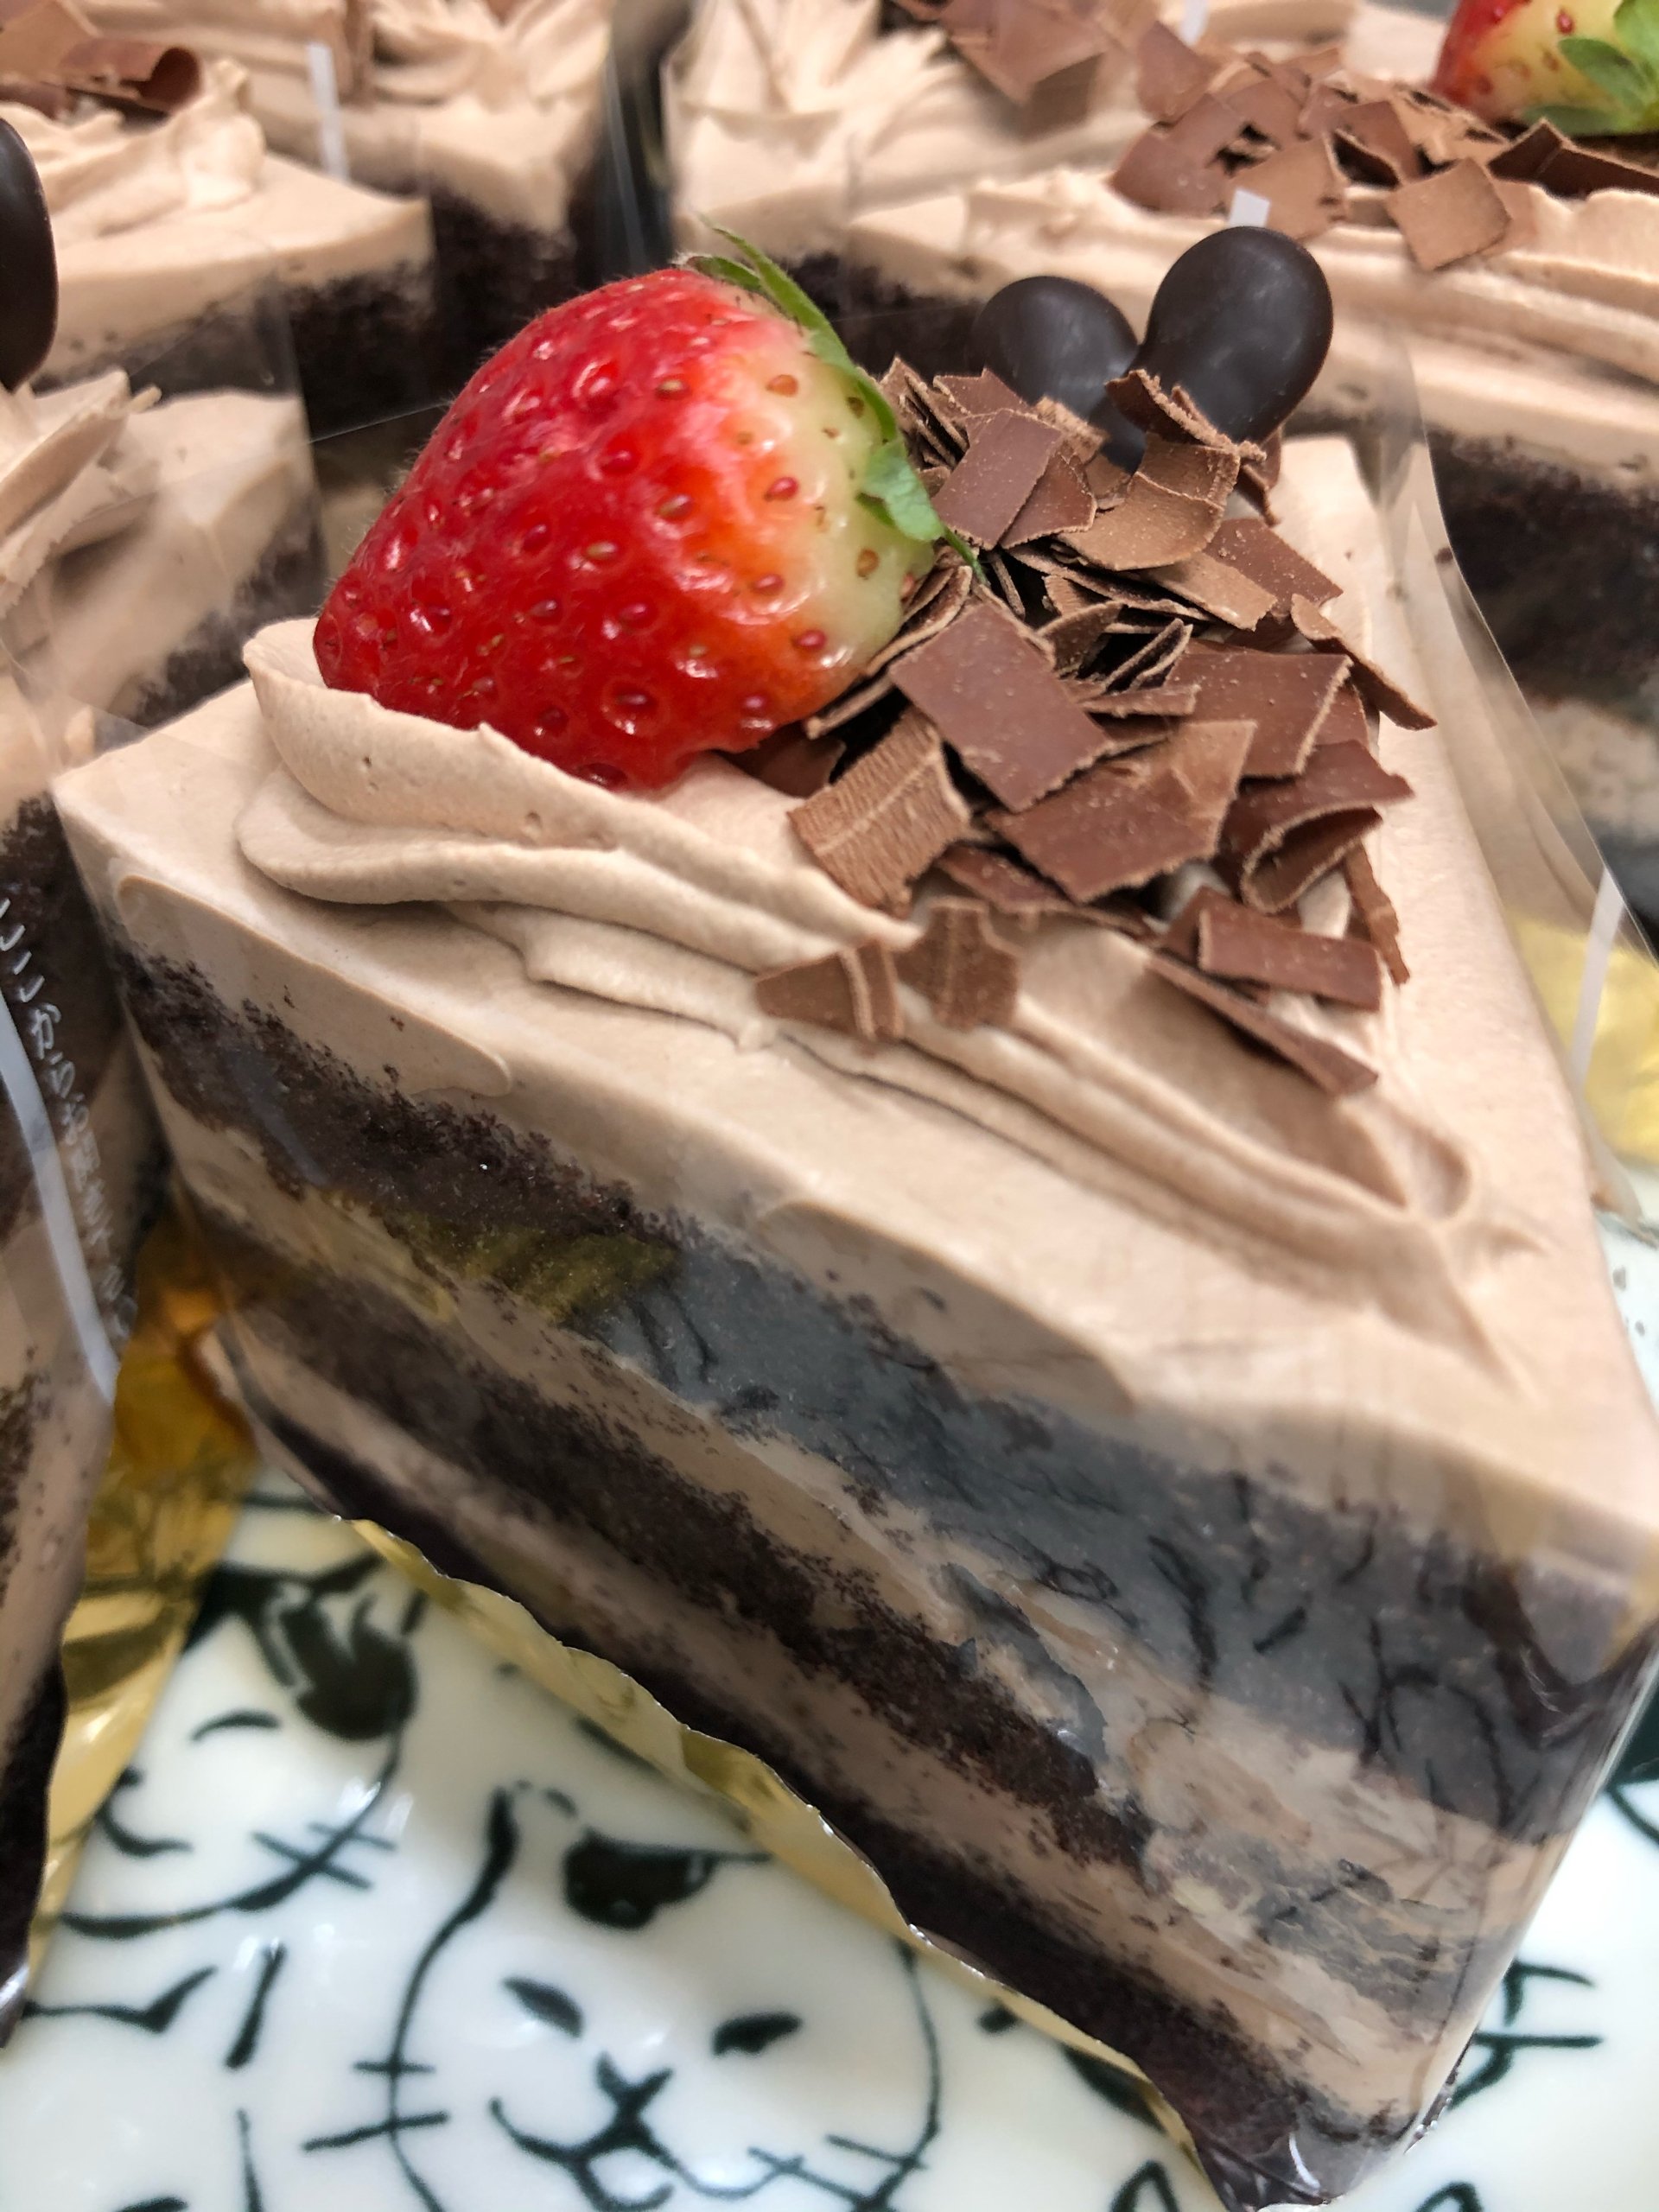 チョコレートケーキ 02 12 福島市のケーキ スイーツショップ ふぁぶーる オリジナルデコレーションケーキがオススメ